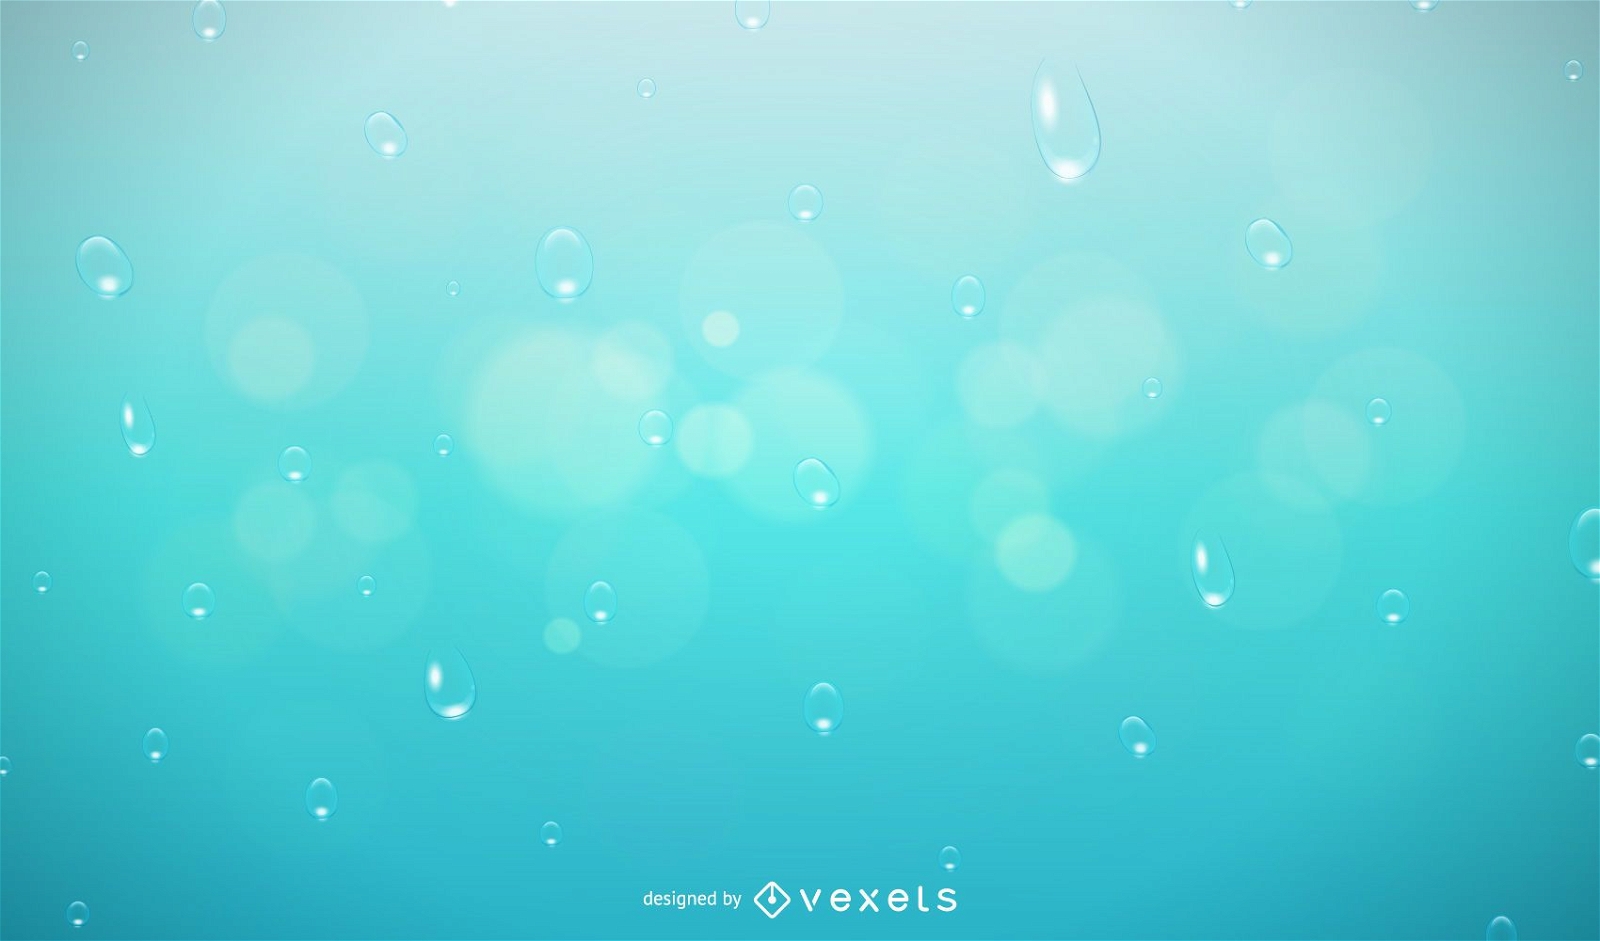 Free Vector - Dew water drop